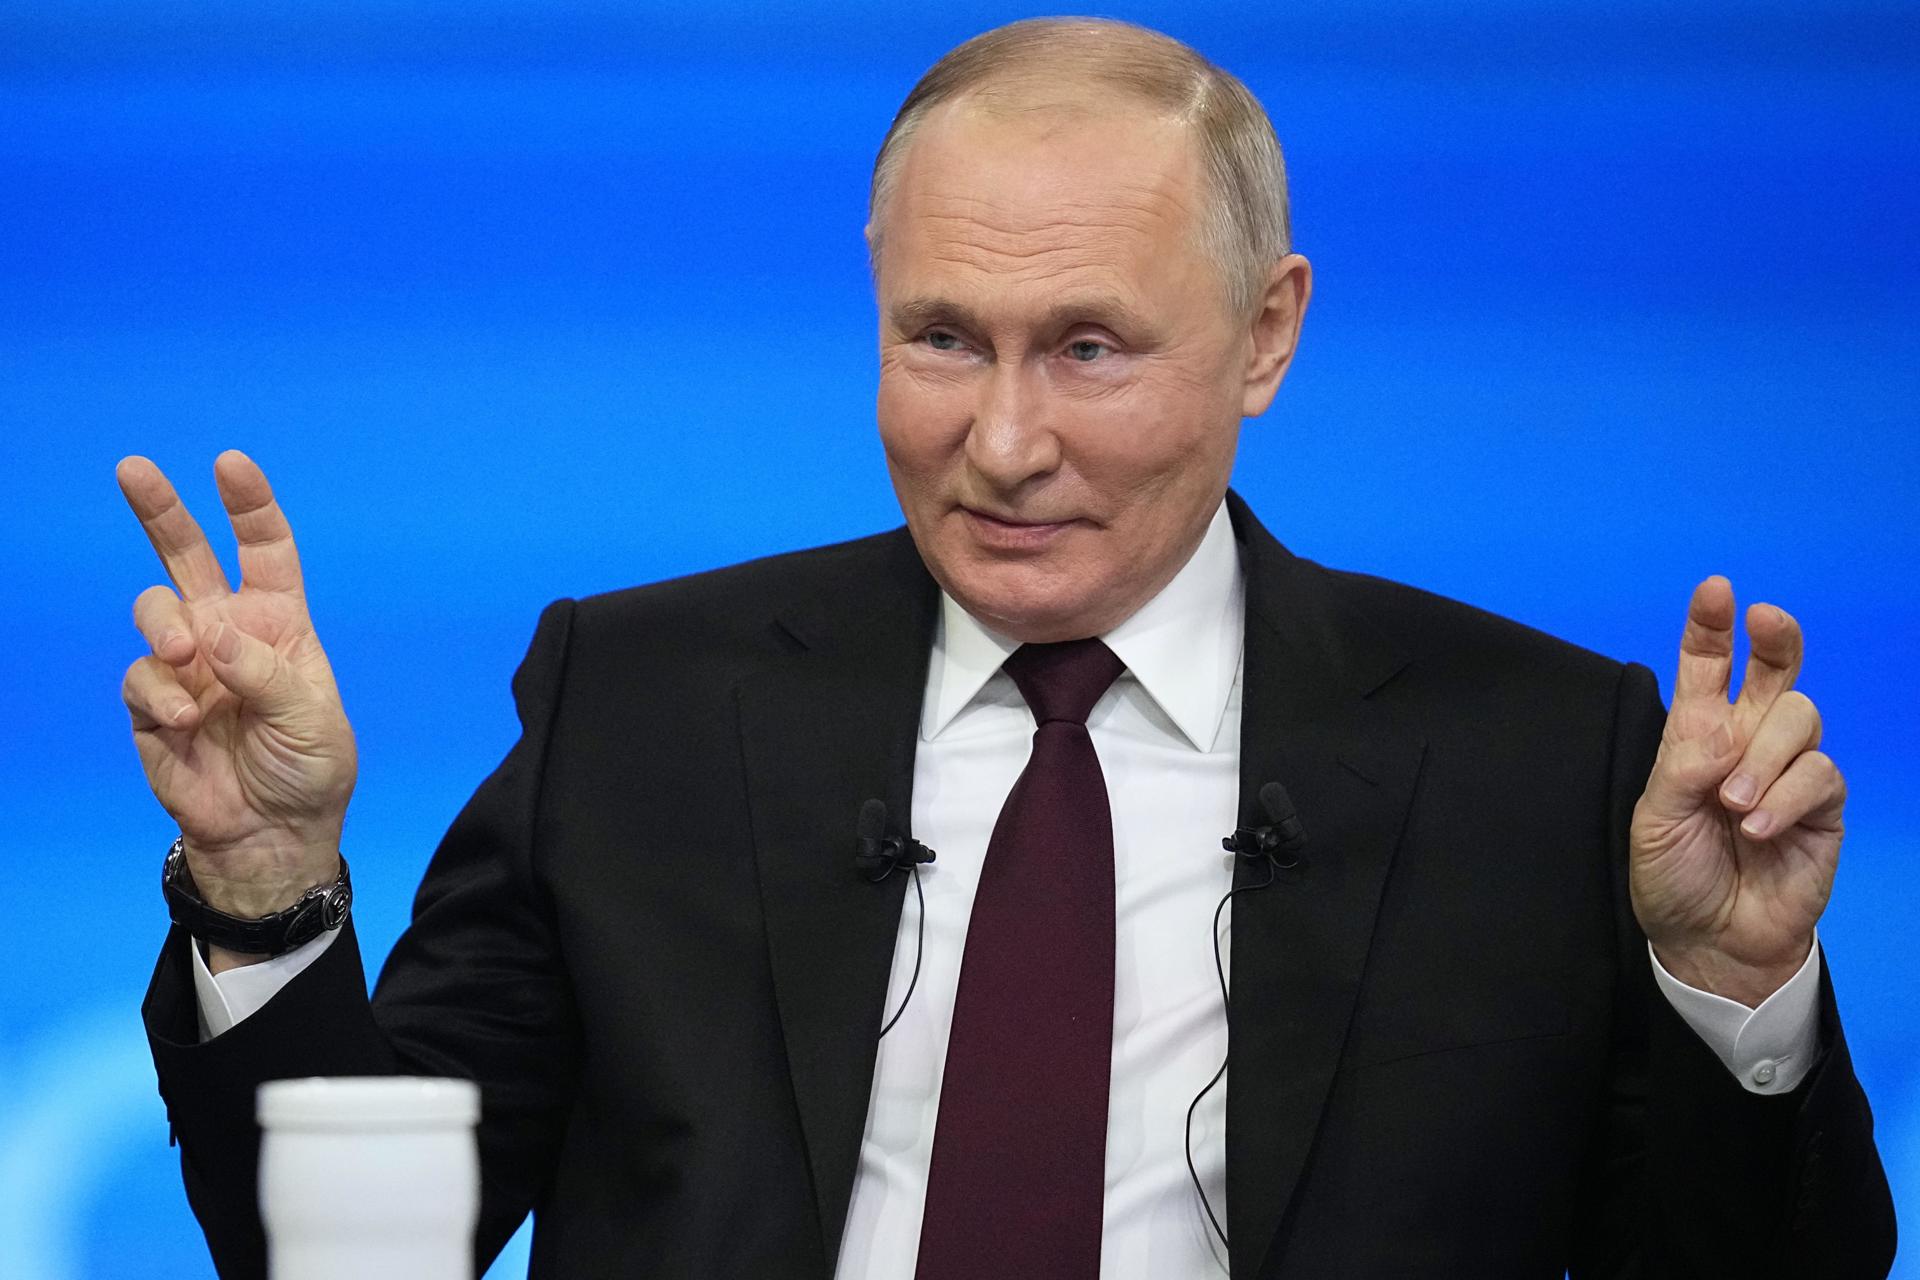 Putin dijo que la invasión rusa a Ucrania seguirá adelante: “Habrá paz cuando logremos nuestros objetivos”